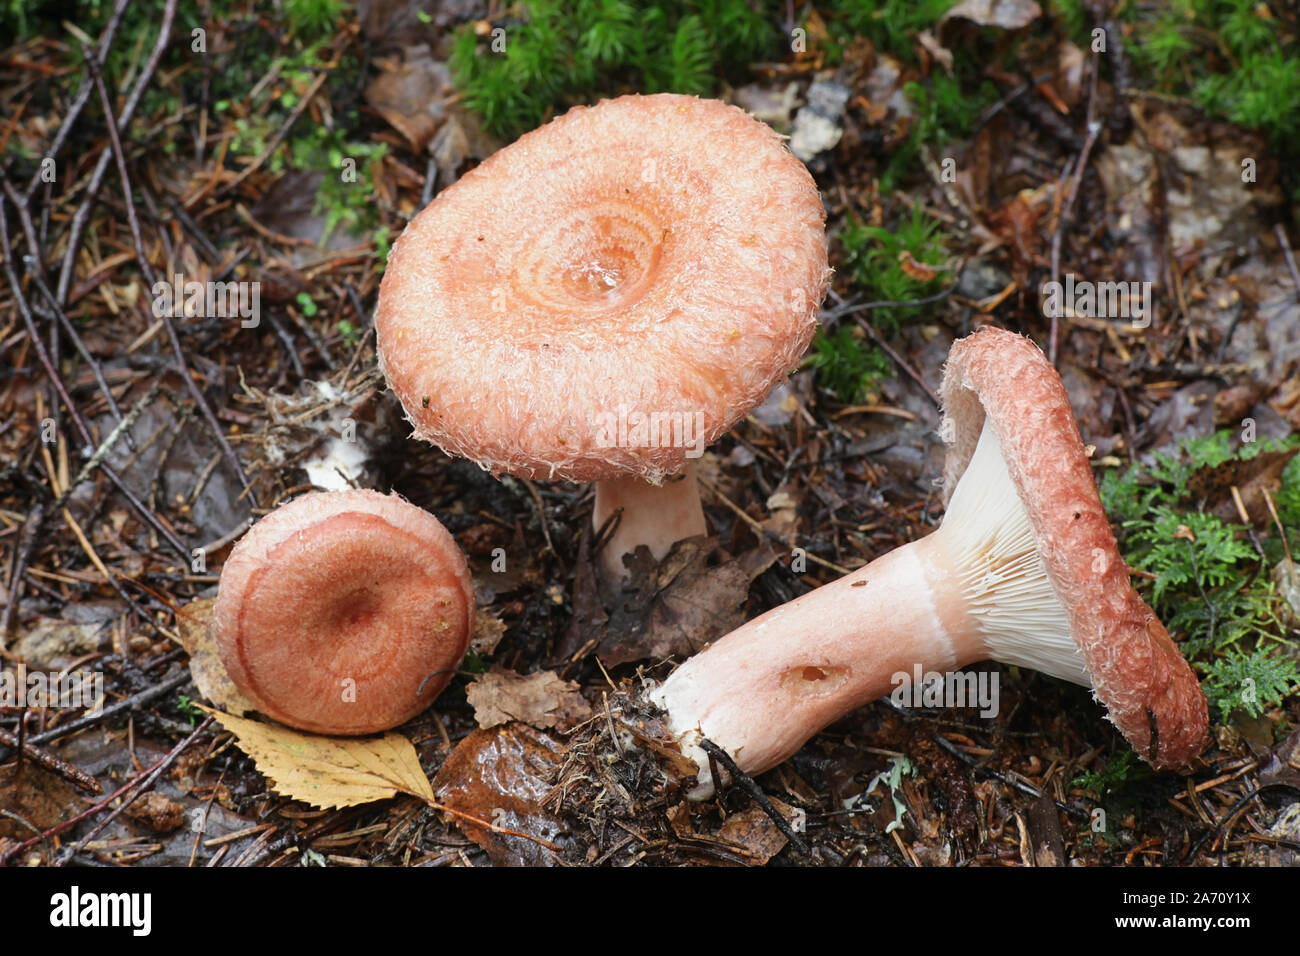 Lactarius torminosus, bekannt als das wollige milkcap oder die bärtigen milkcap, eine essbare wild mushroom aus Finnland Stockfoto